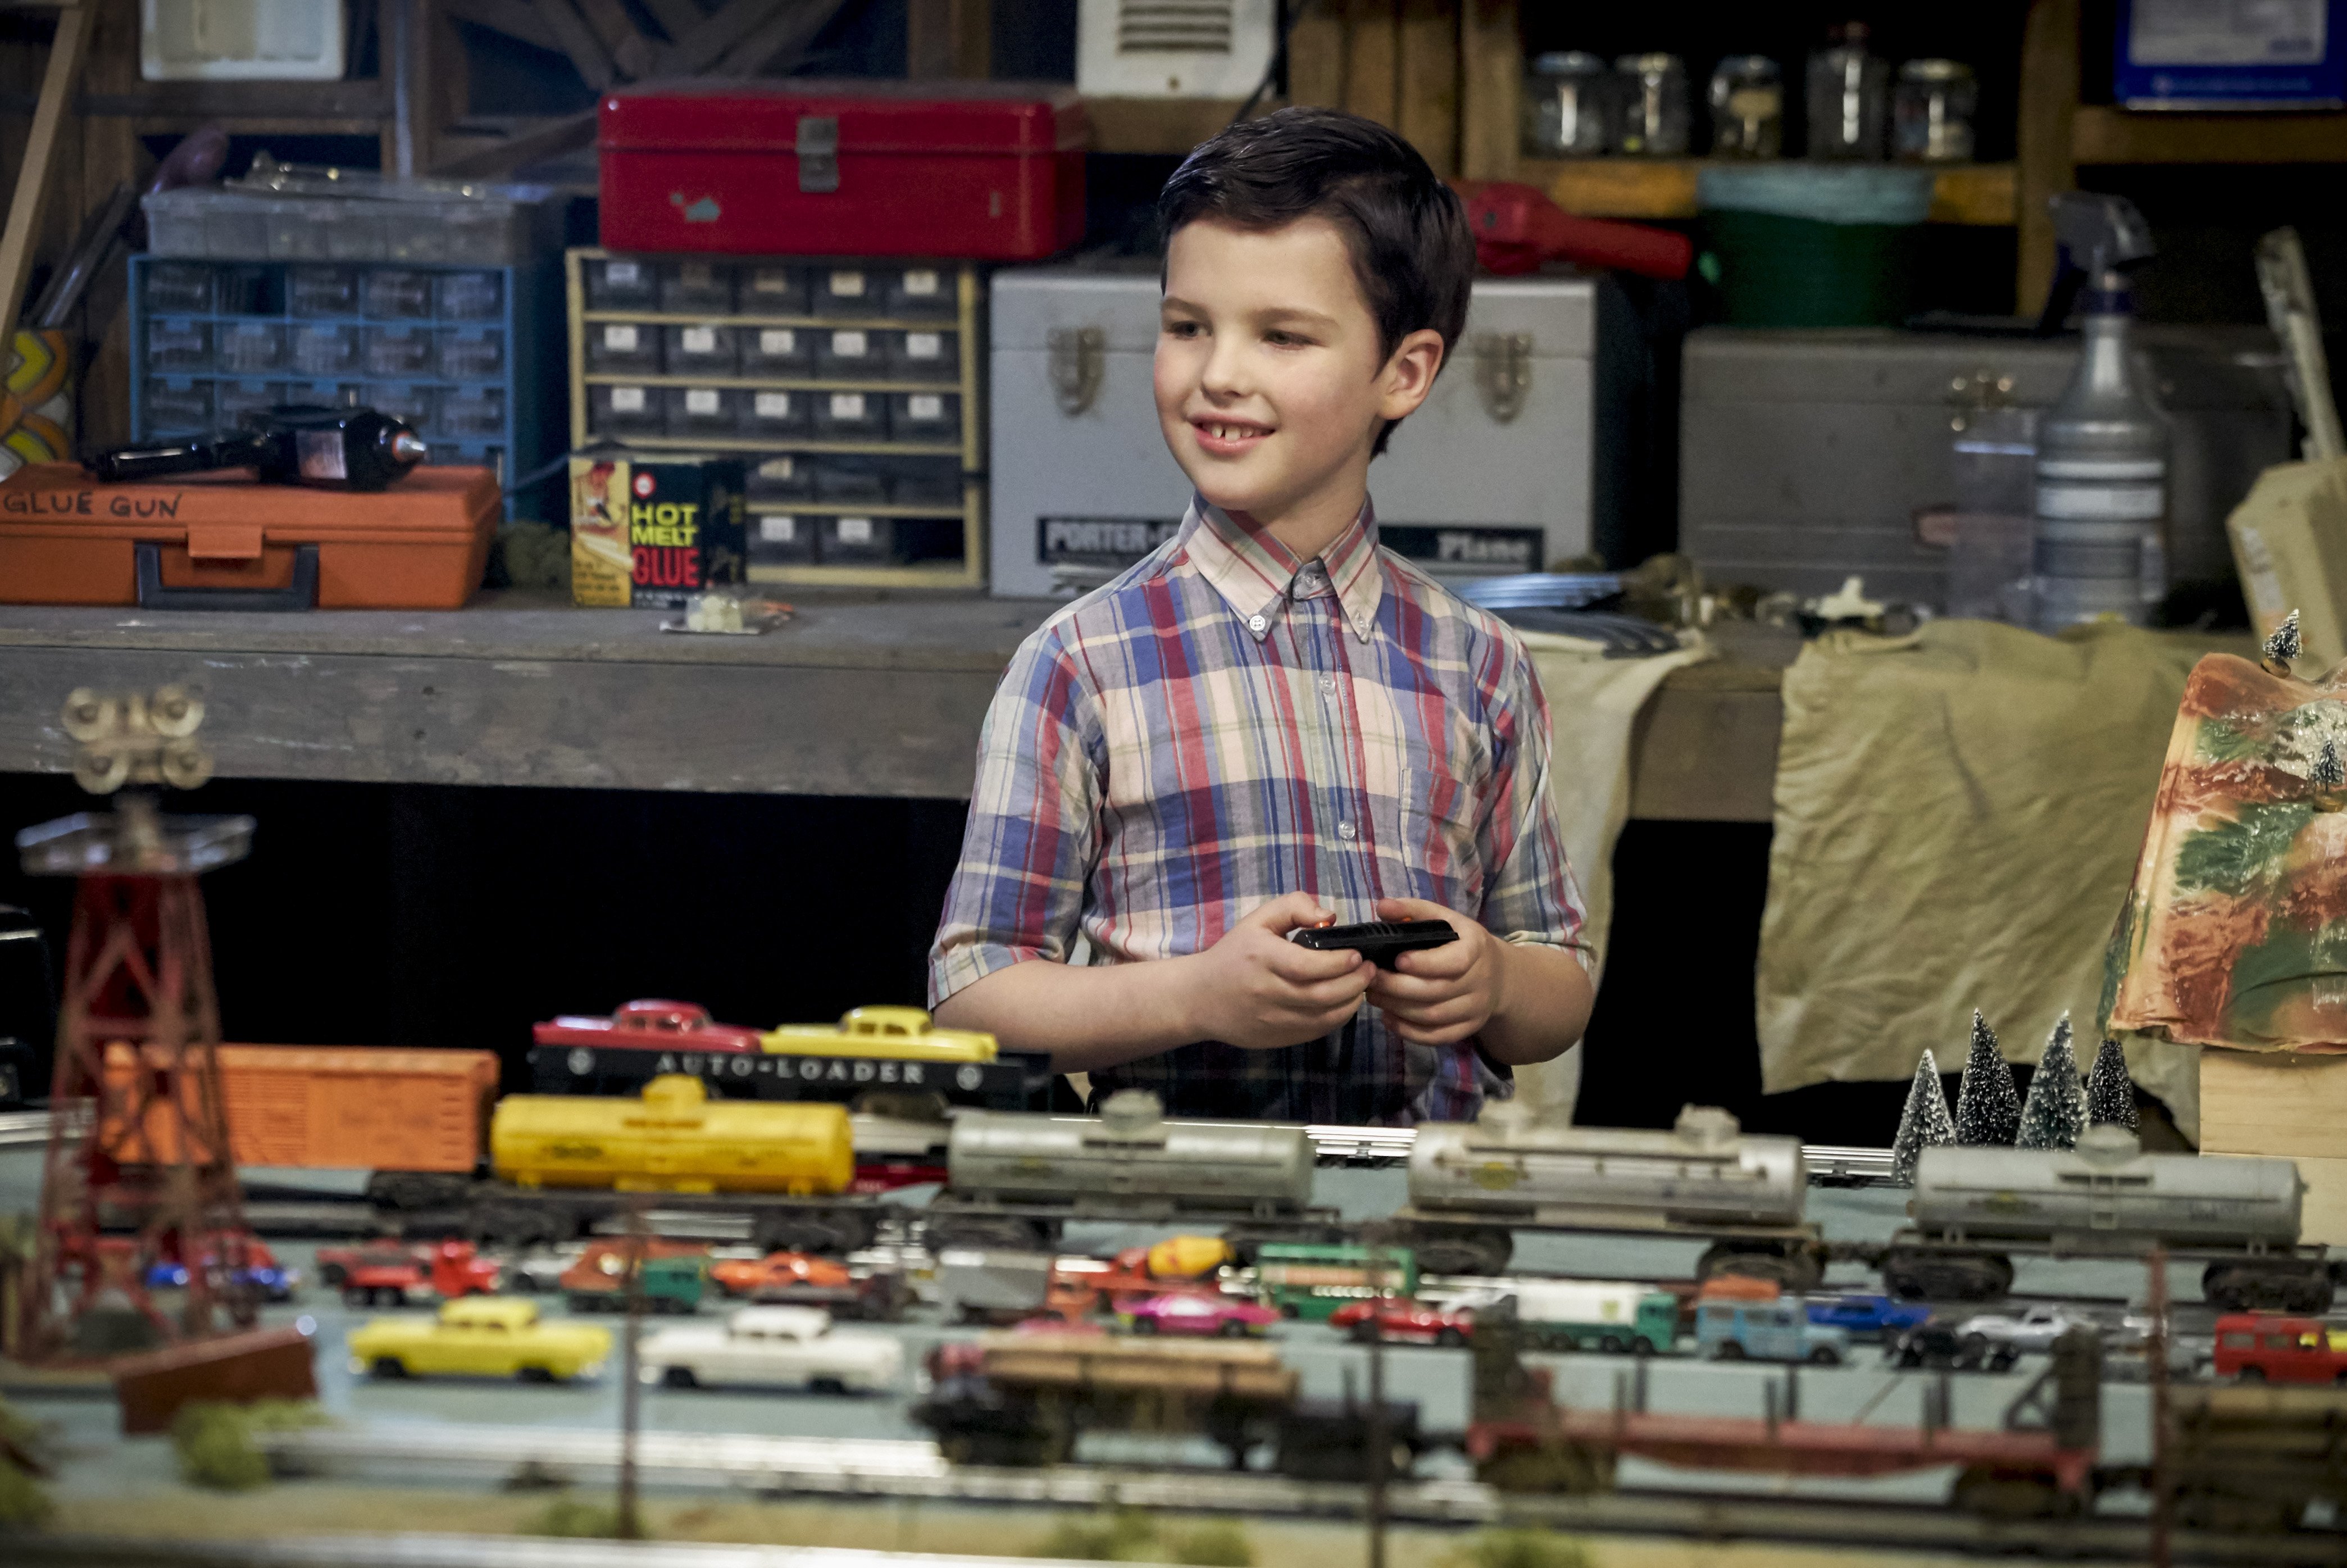  Warner prepara precuela de “The Big Bang Theory”: YOUNG SHELDON